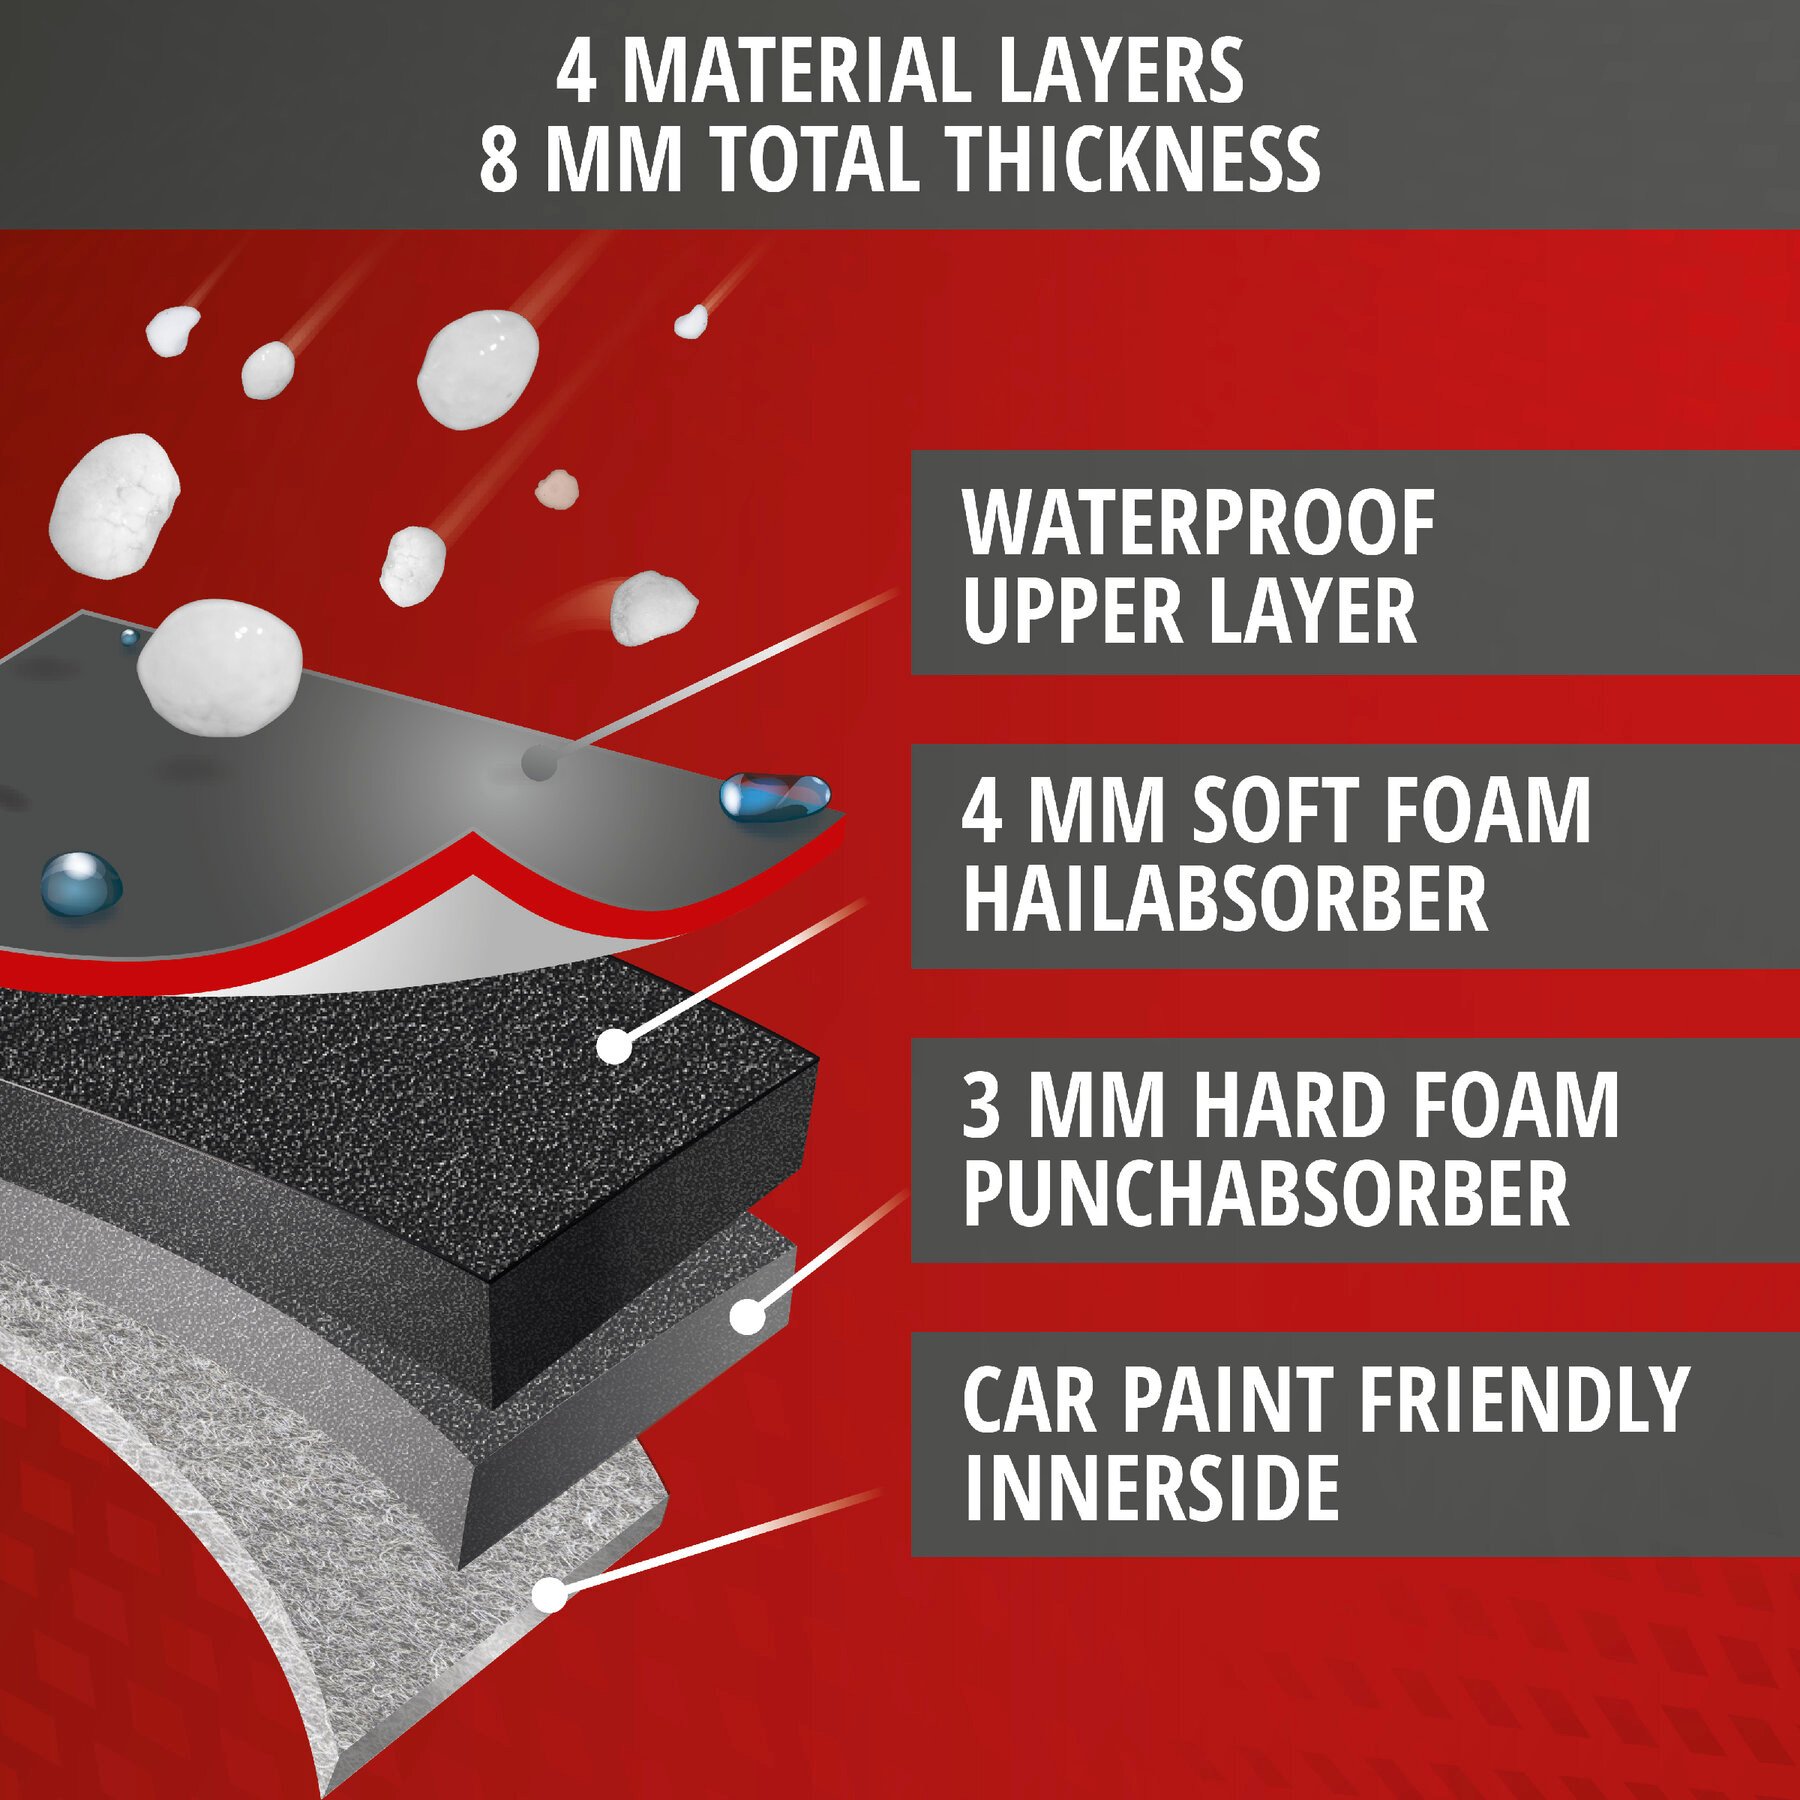 Car hail protection tarpaulin Premium Hybrid SUV size S